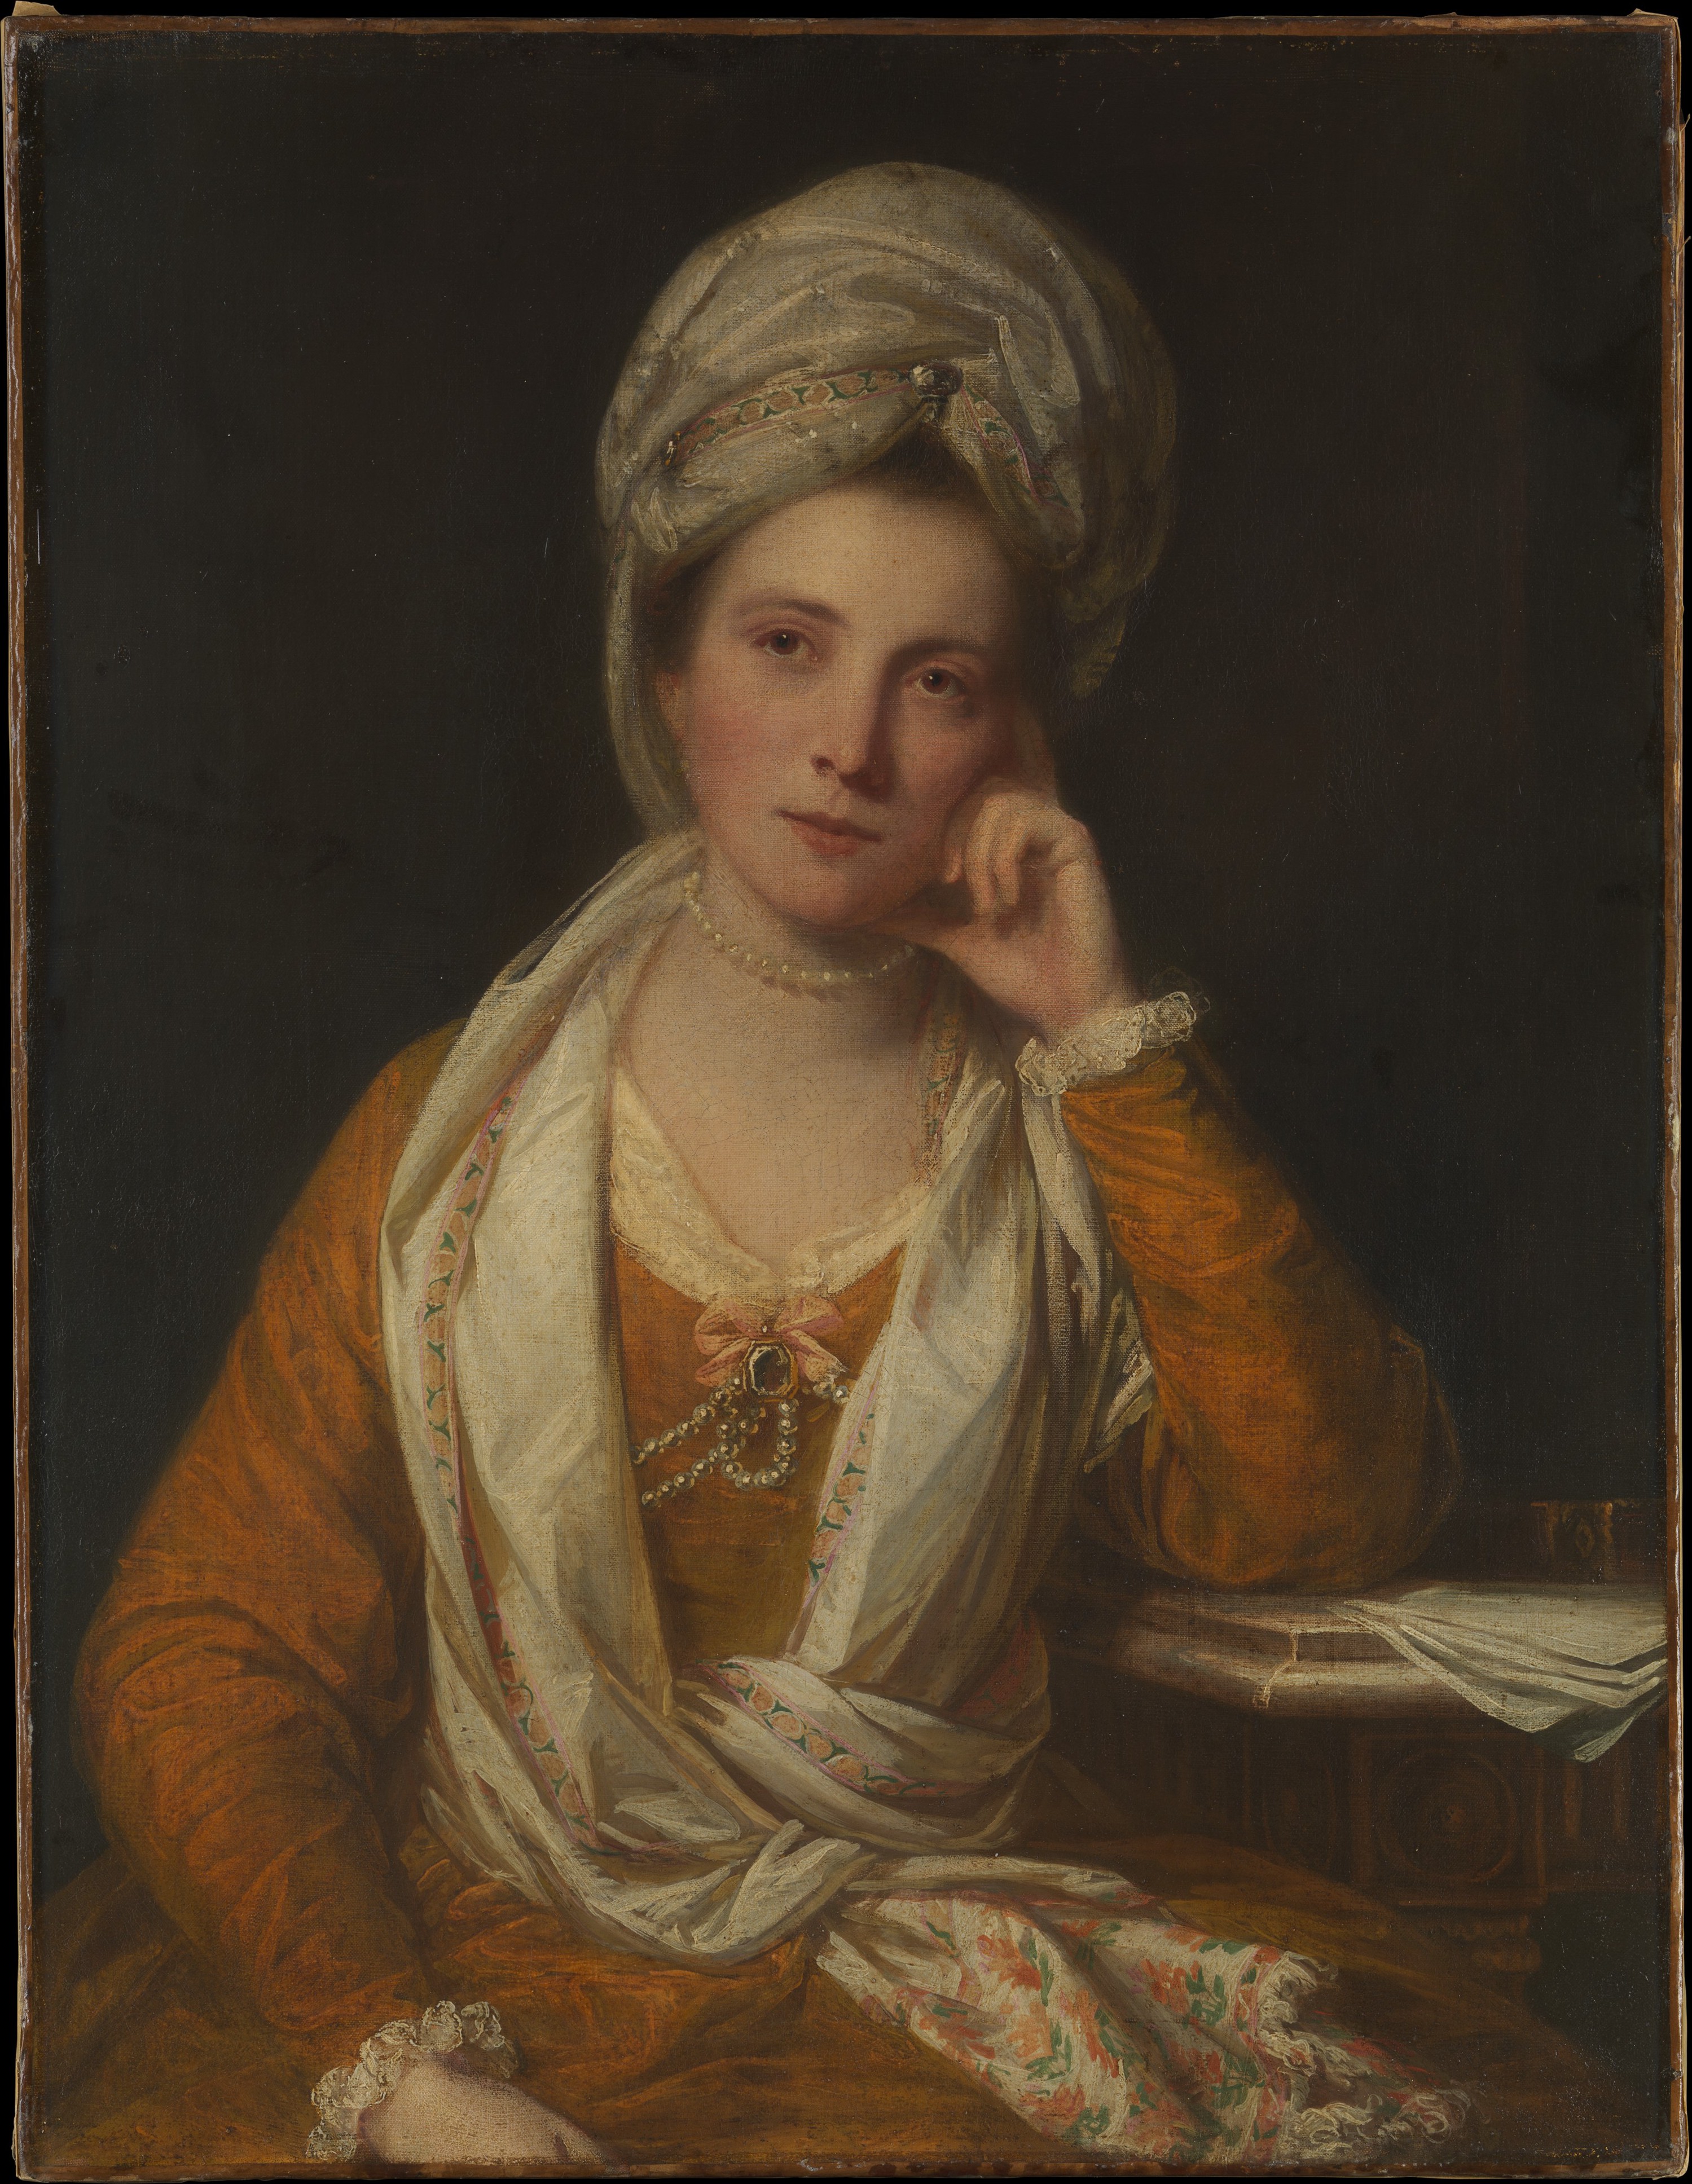 Mrs. Horton, később vikomtessz Maynard by Joshua Reynolds - 1770-es évek - 92.1 x 71.1 cm 